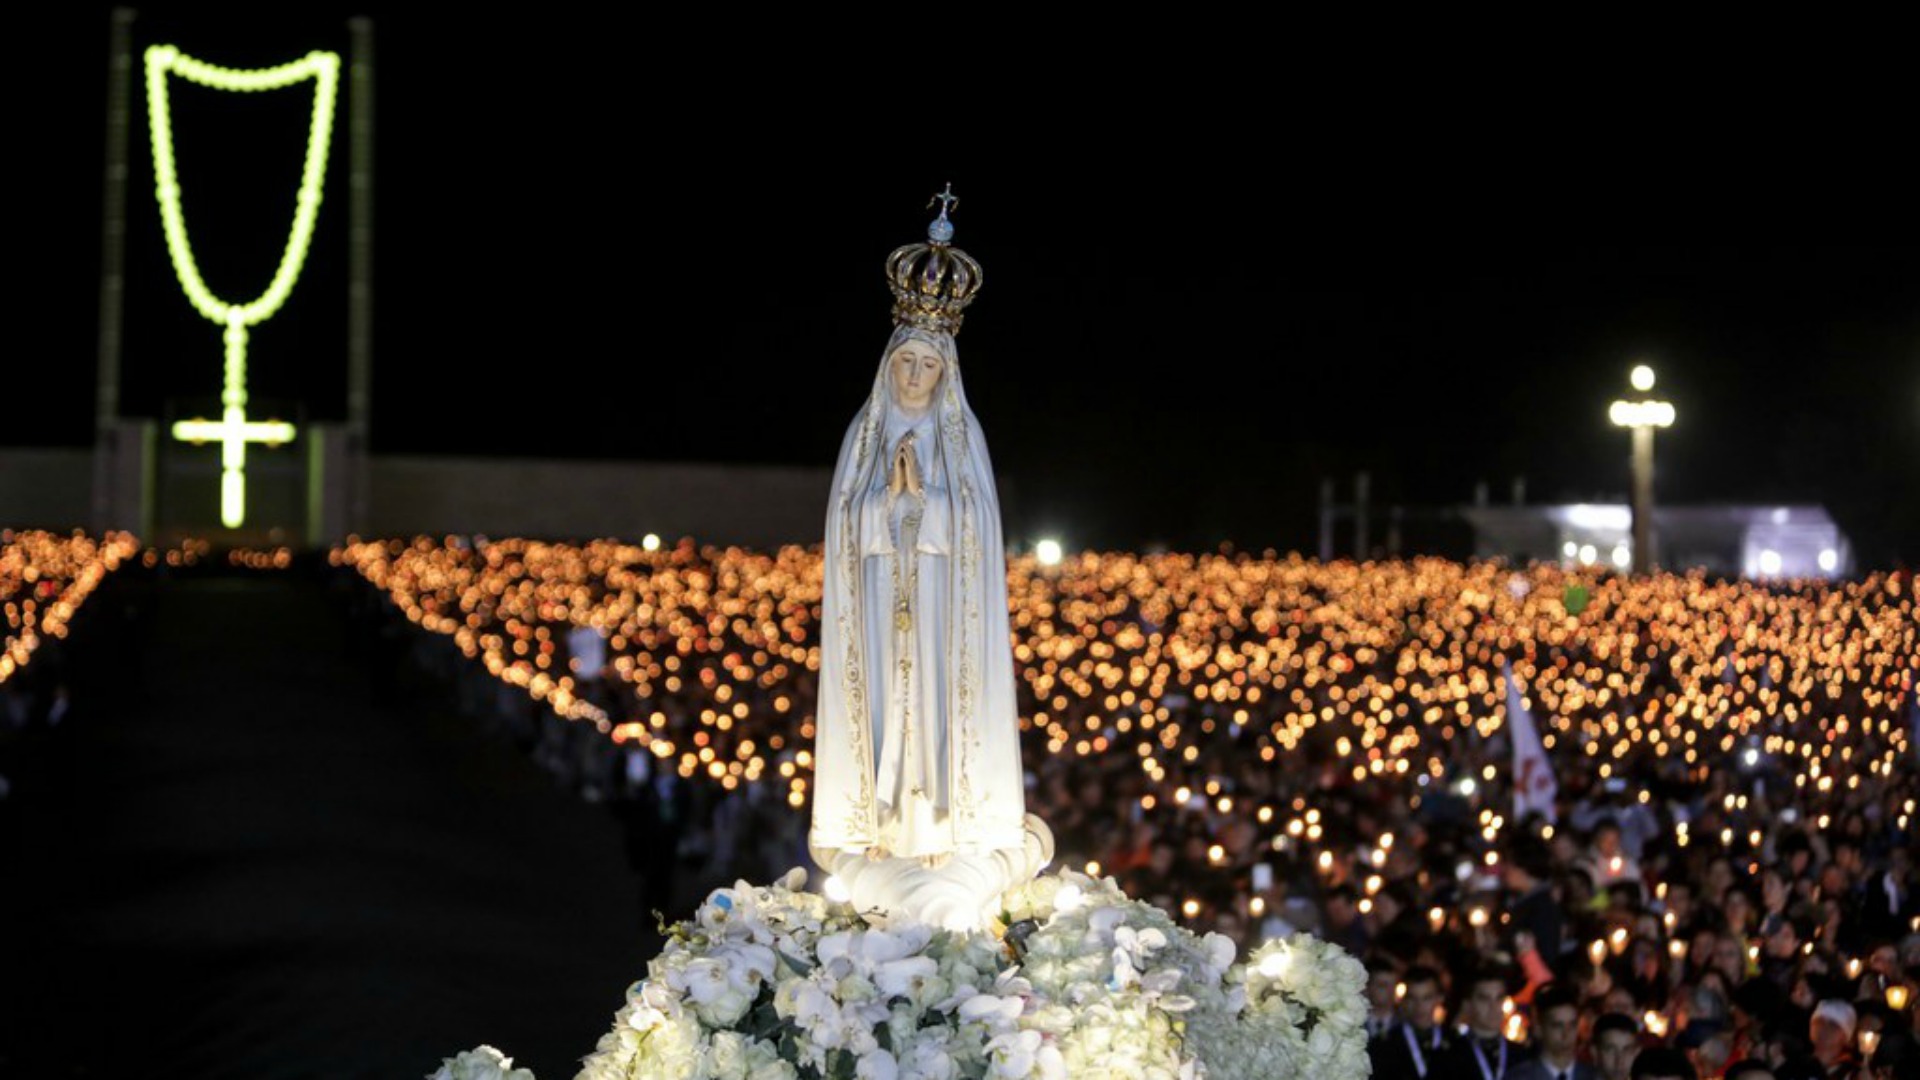 Suite au pic de fréquentation atteint en 2017, avec la venue du pape François (9,4 millions de visiteurs), Fatima reste le lieu de pèlerinage le plus fréquenté d'Europe   | © Keystone